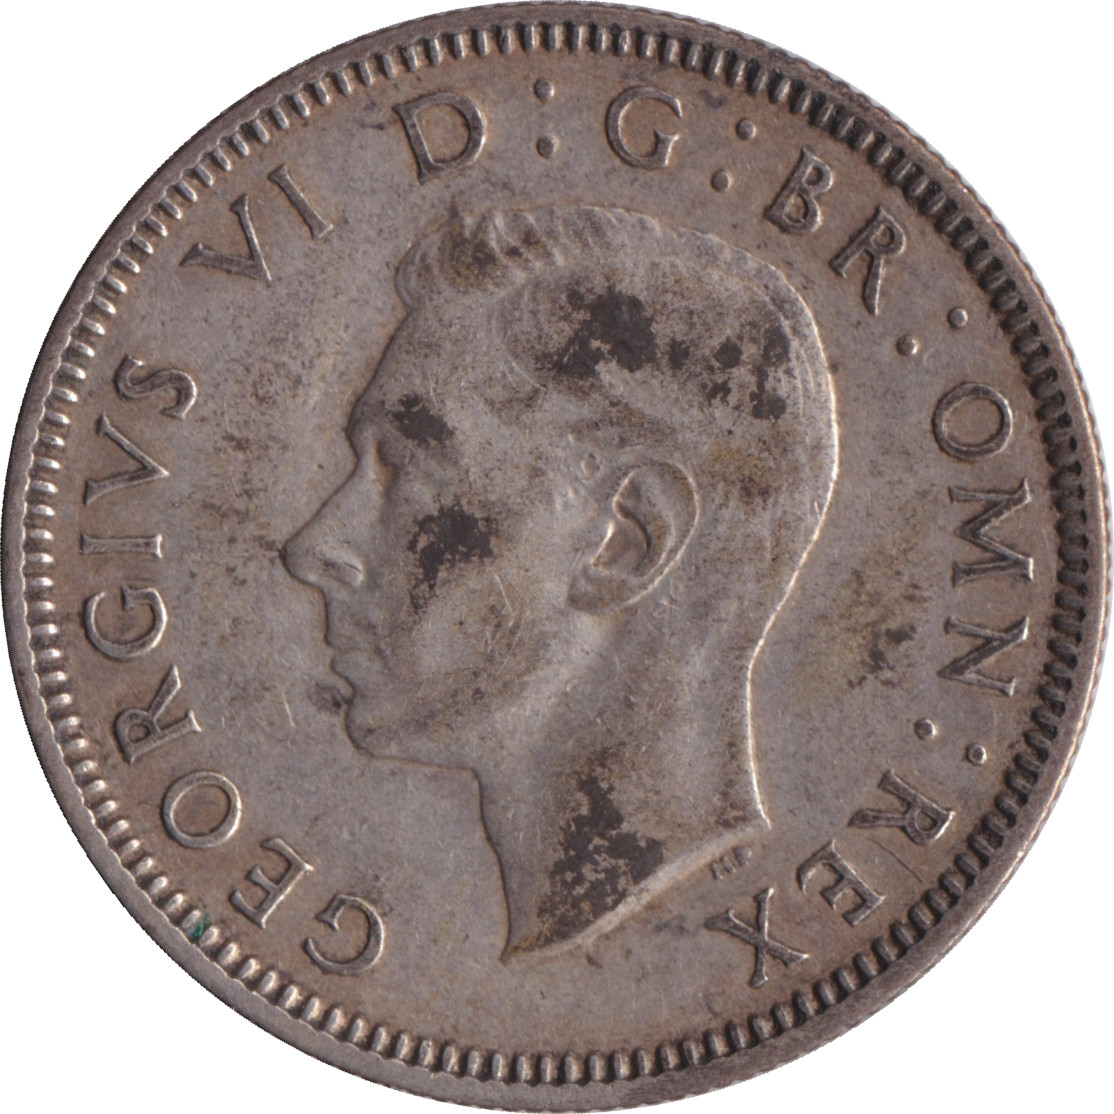 1 shilling - George VI - Ecosse